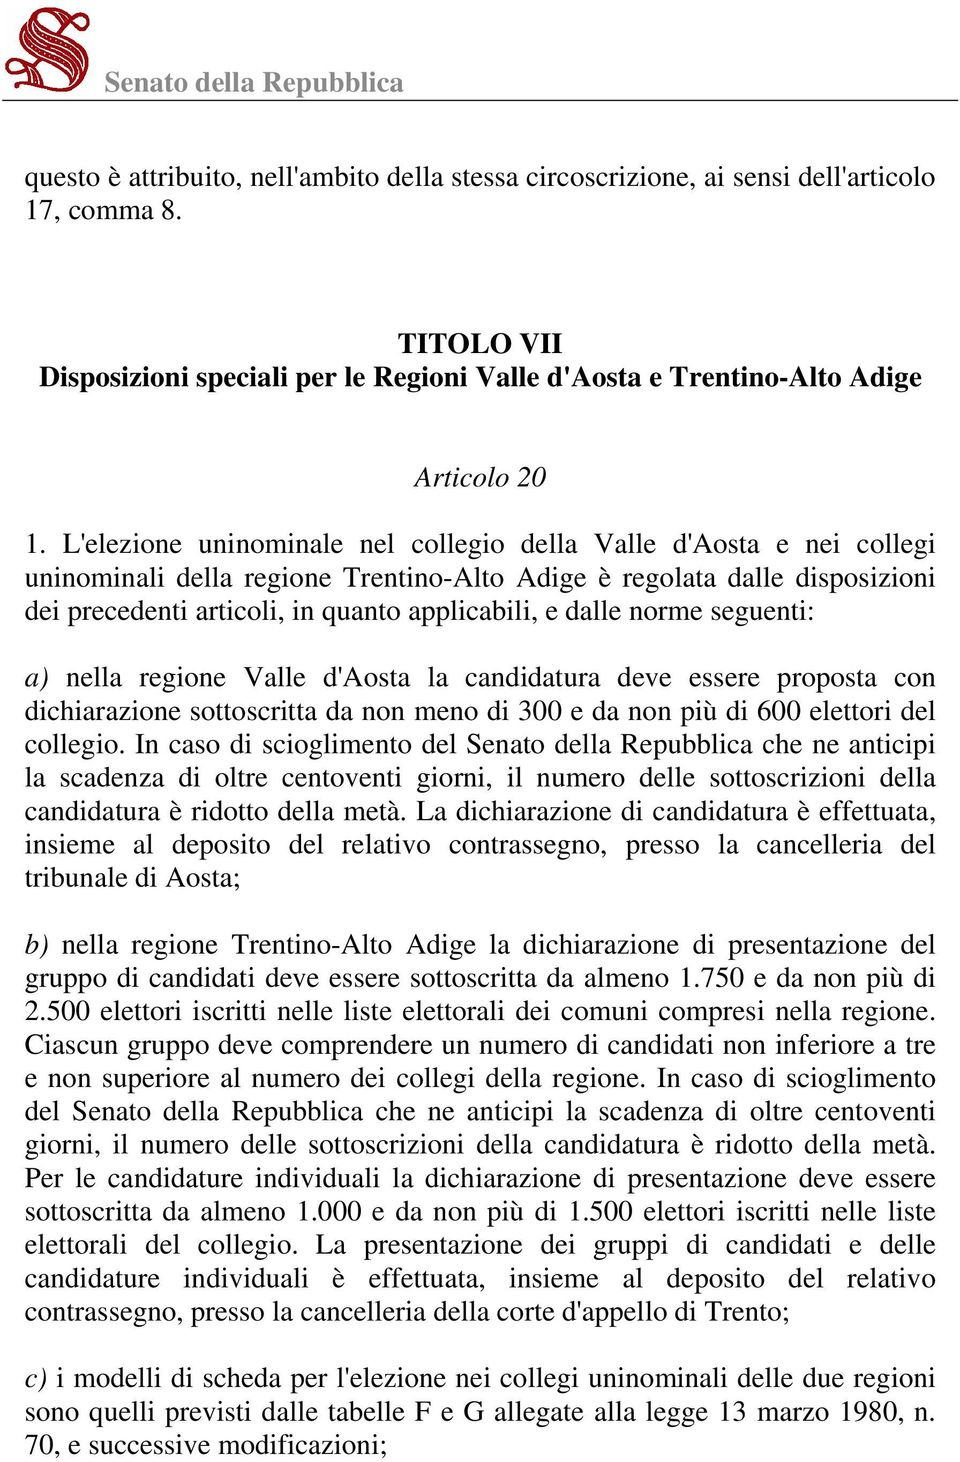 dalle norme seguenti: a) nella regione Valle d'aosta la candidatura deve essere proposta con dichiarazione sottoscritta da non meno di 300 e da non più di 600 elettori del collegio.